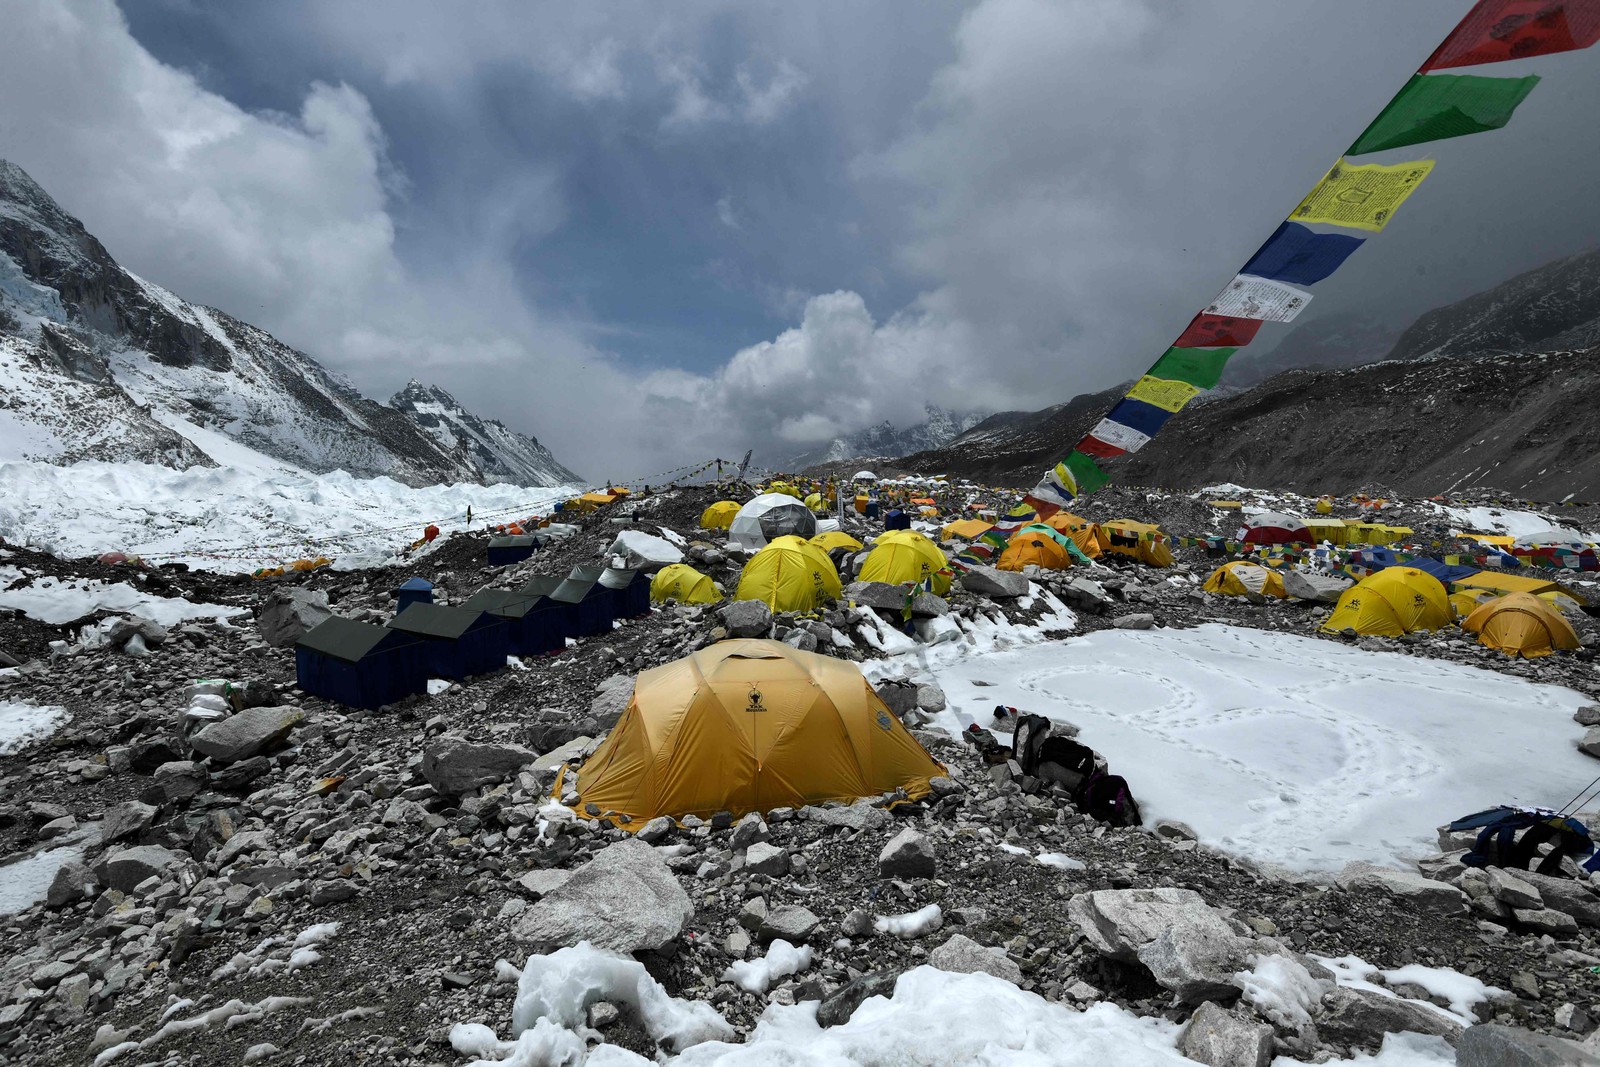 Tendas fluorescentes, equipamento de escalada descartado, botijões de gás vazios e até excrementos humanos cobrem o caminho trilhado até o cume — Foto: Prakash Mathema/AFP